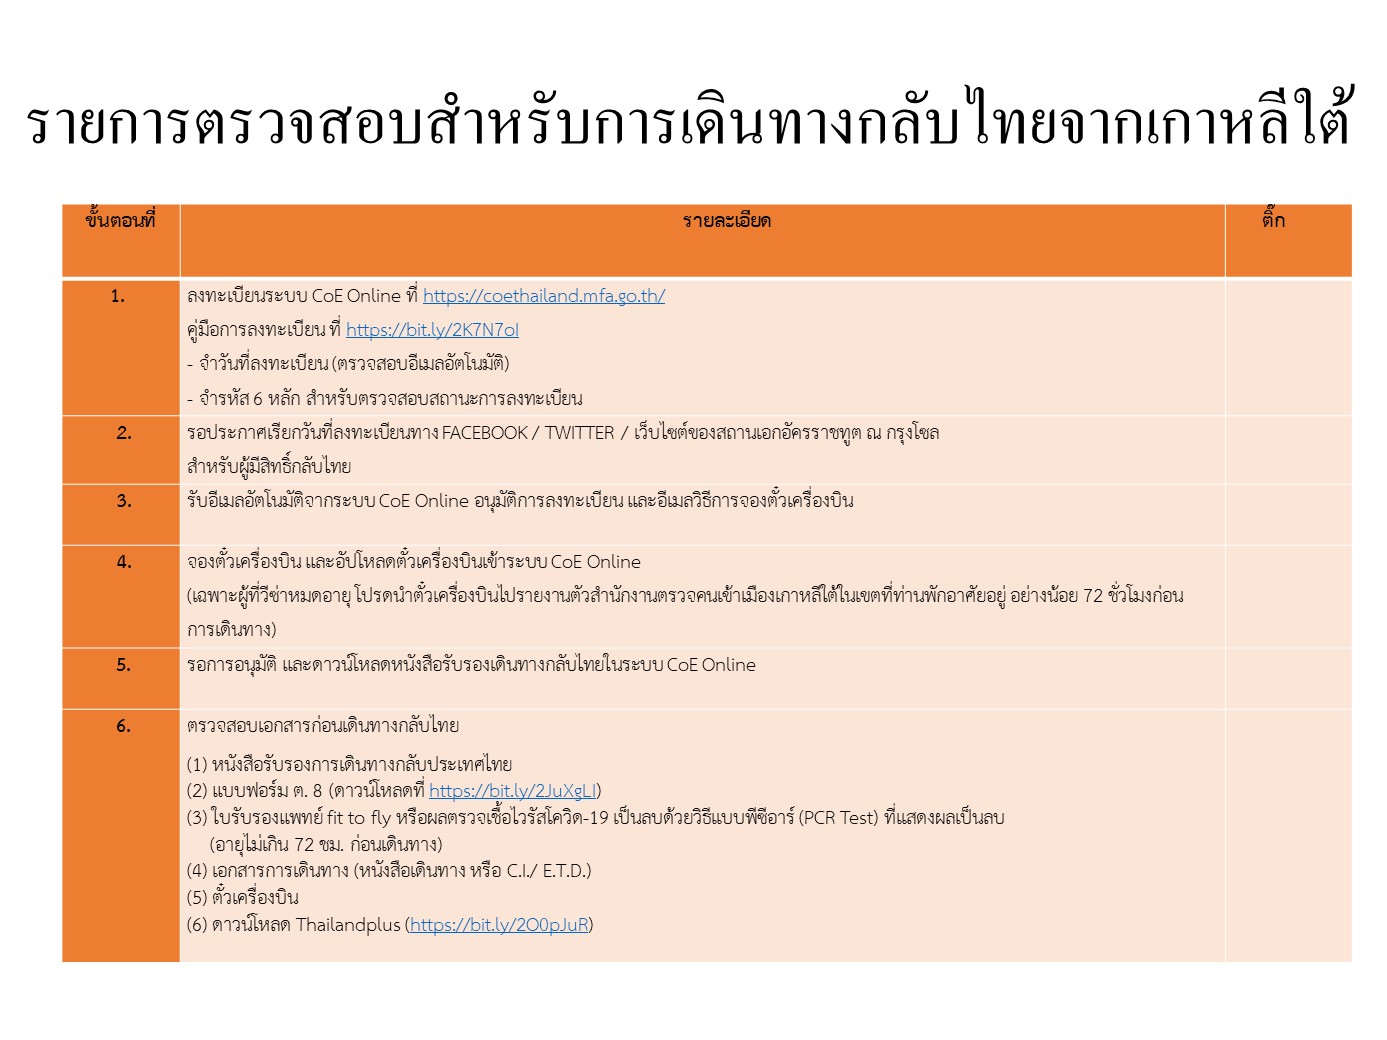 ประกาศวิธีการเรียกคิวตามวันที่ลงทะเบียนเดินทางกลับไทย ตั้งแต่เดือน เม.ย. 64  เป็นต้นไป (เลือกักตัวที่รัฐบาลกำหนดให้ Sq) สำหรับคนไทยในสาธารณรัฐเกาหลี -  สถานเอกอัครราชทูต ณ กรุงโซล